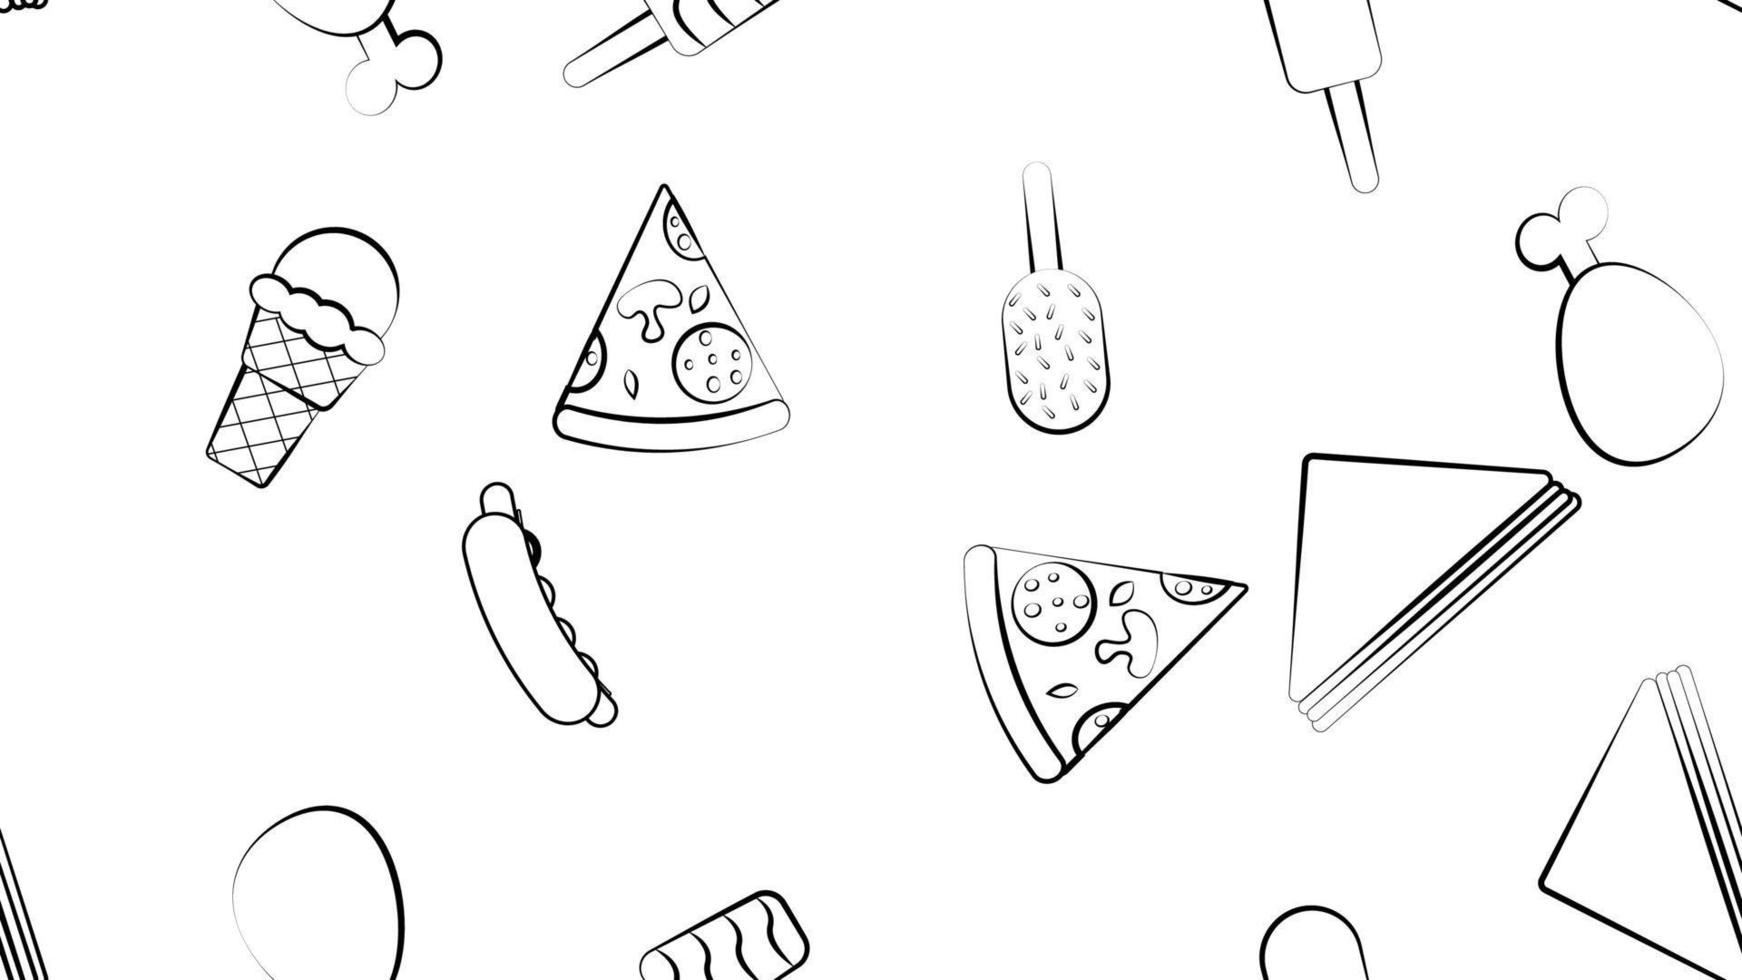 schwarz-weißes endloses nahtloses muster von lebensmittel- und snackartikeln, die für restaurantbar-café-hotdog, sandwich, eiscreme, huhn, pizza eingestellt werden. der Hintergrund vektor